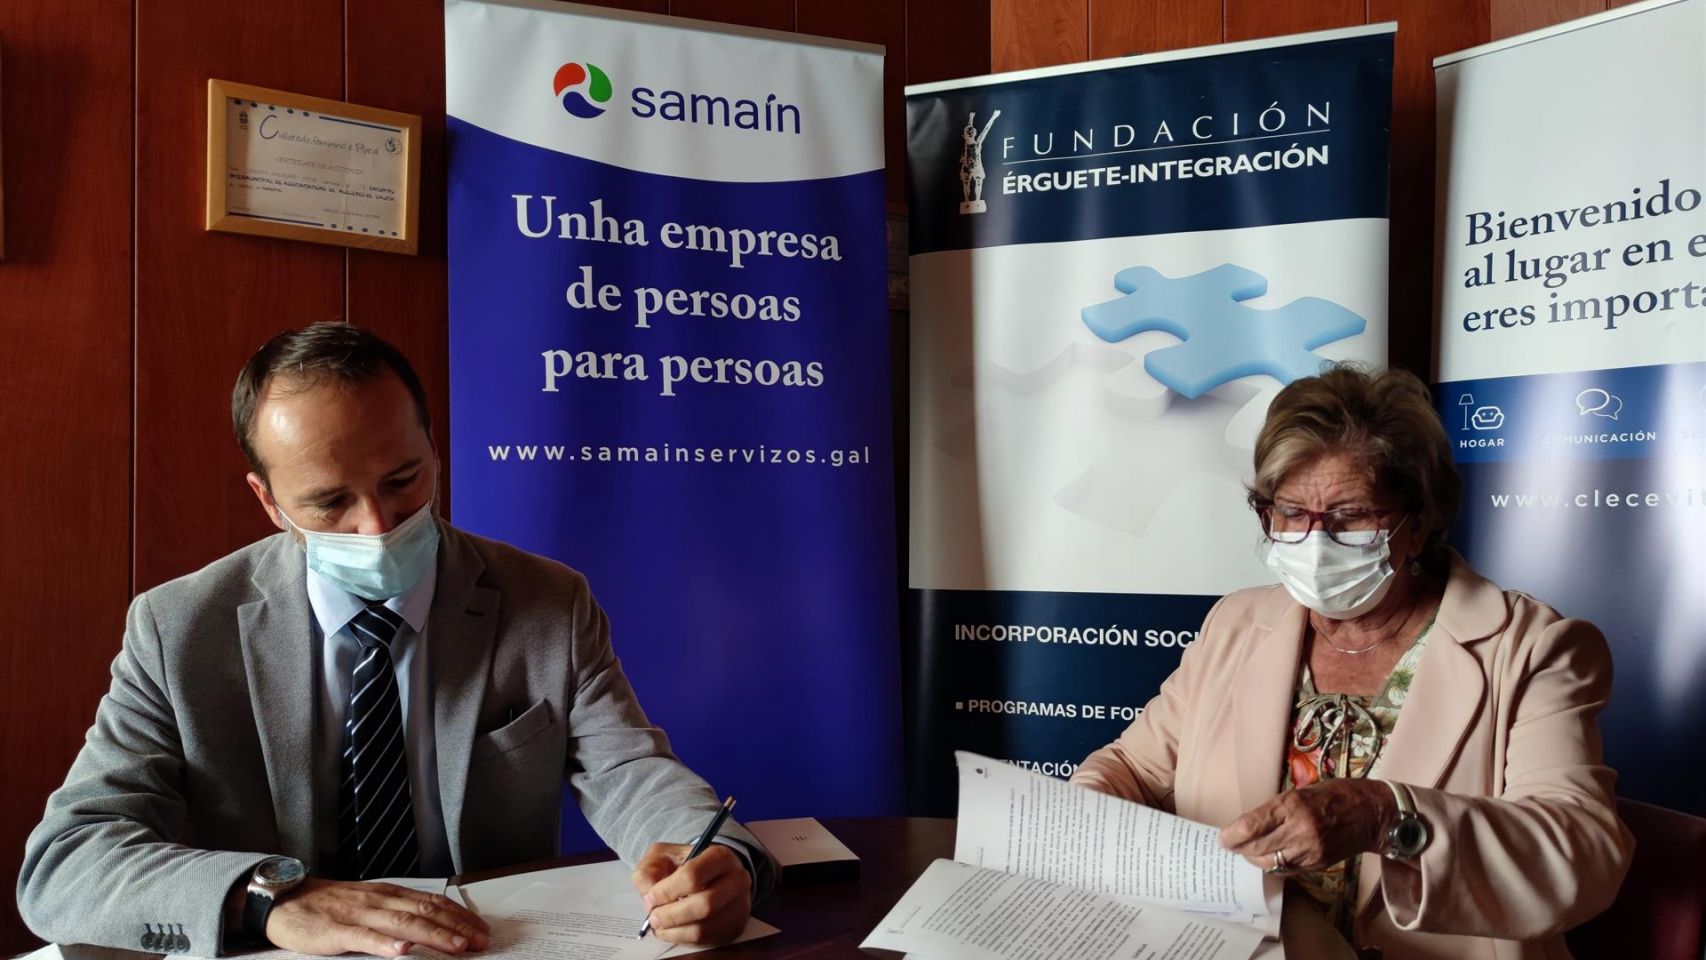 El delegado de Clece en Galicia, Alberto Domínguez, y la presidenta de la Fundación Érguete-Integración, Carmen Avendaño, firman un convenio de colaboración para impulsar la inserción socio-laboral de personas vulnerables